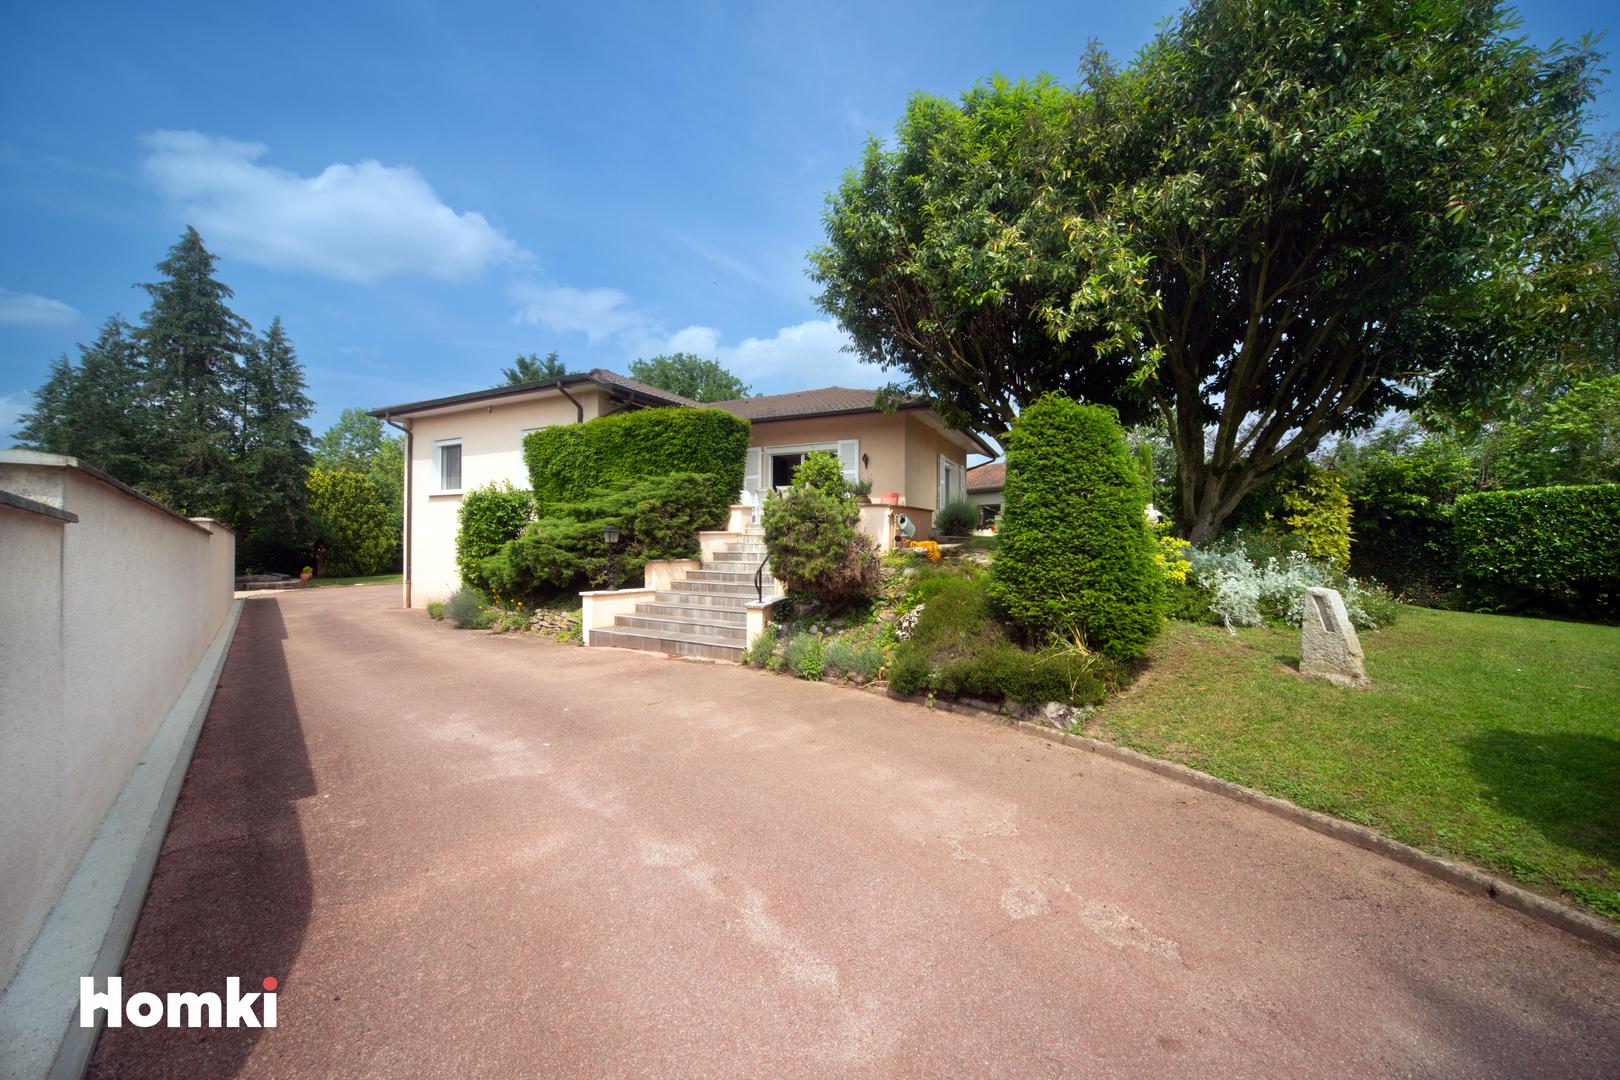 Homki - Vente Maison/villa  de 180.0 m² à Saint-Denis-lès-Bourg 01000